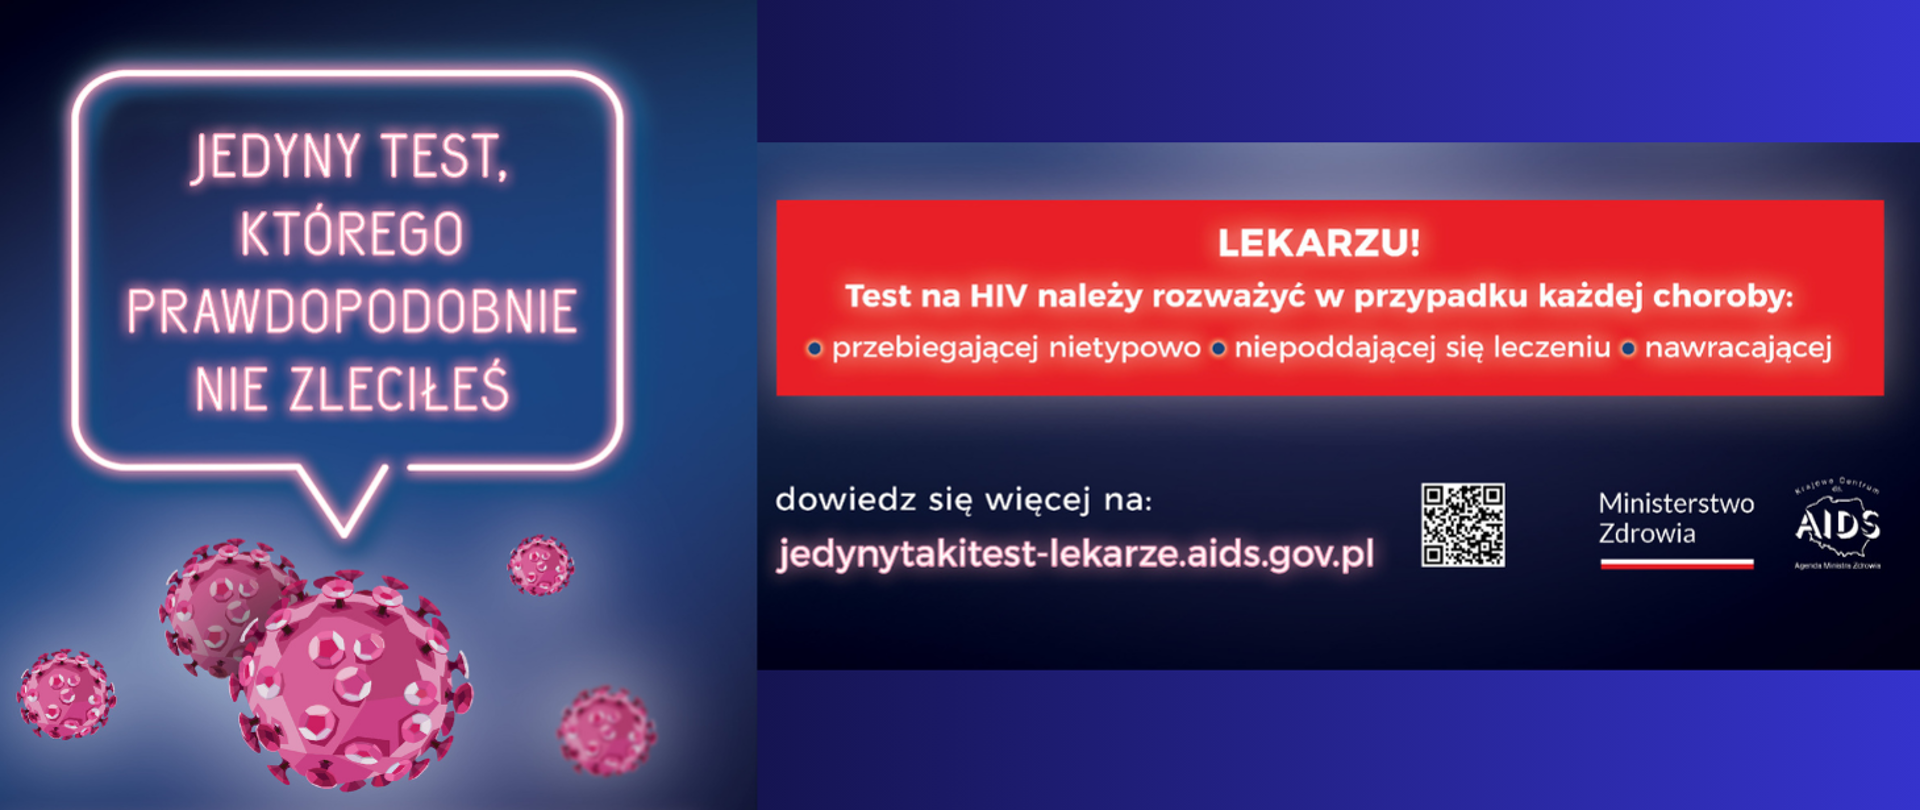 Kampania Krajowego Centrum ds. AIDS skierowana do środowiska medycznego „Jedyny test, którego prawdopodobnie nie zleciłeś”.